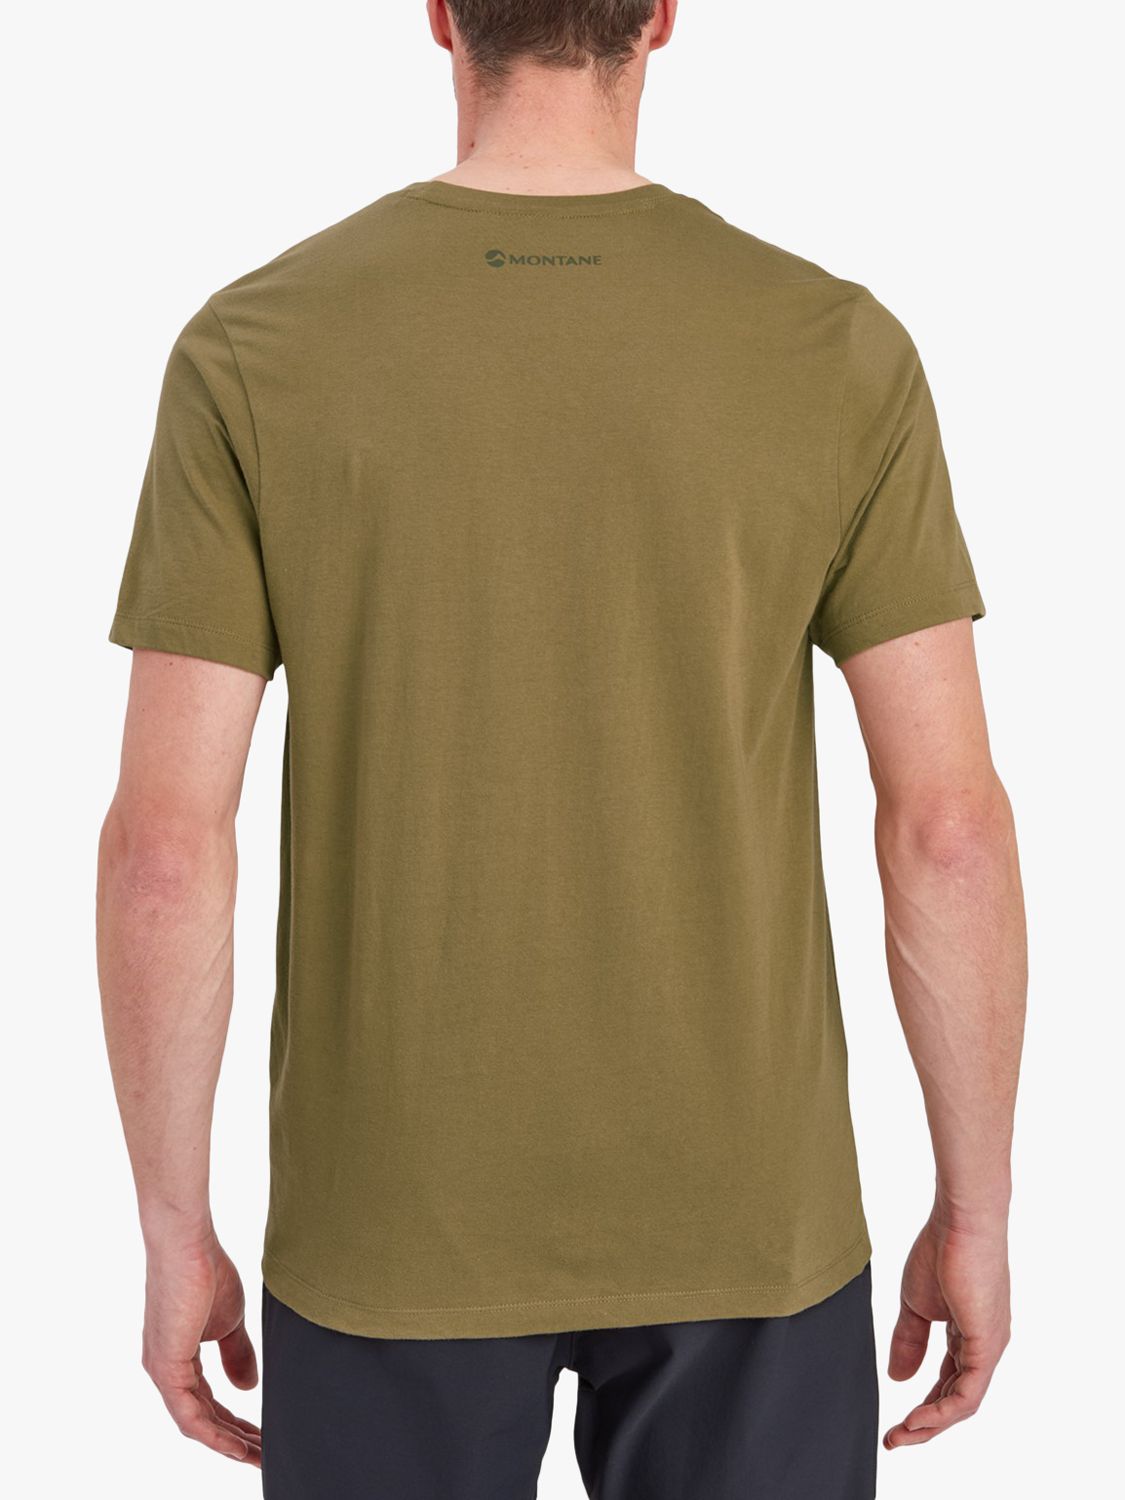 Buy Montane Mono Logo Organic Cotton T-Shirt Online at johnlewis.com